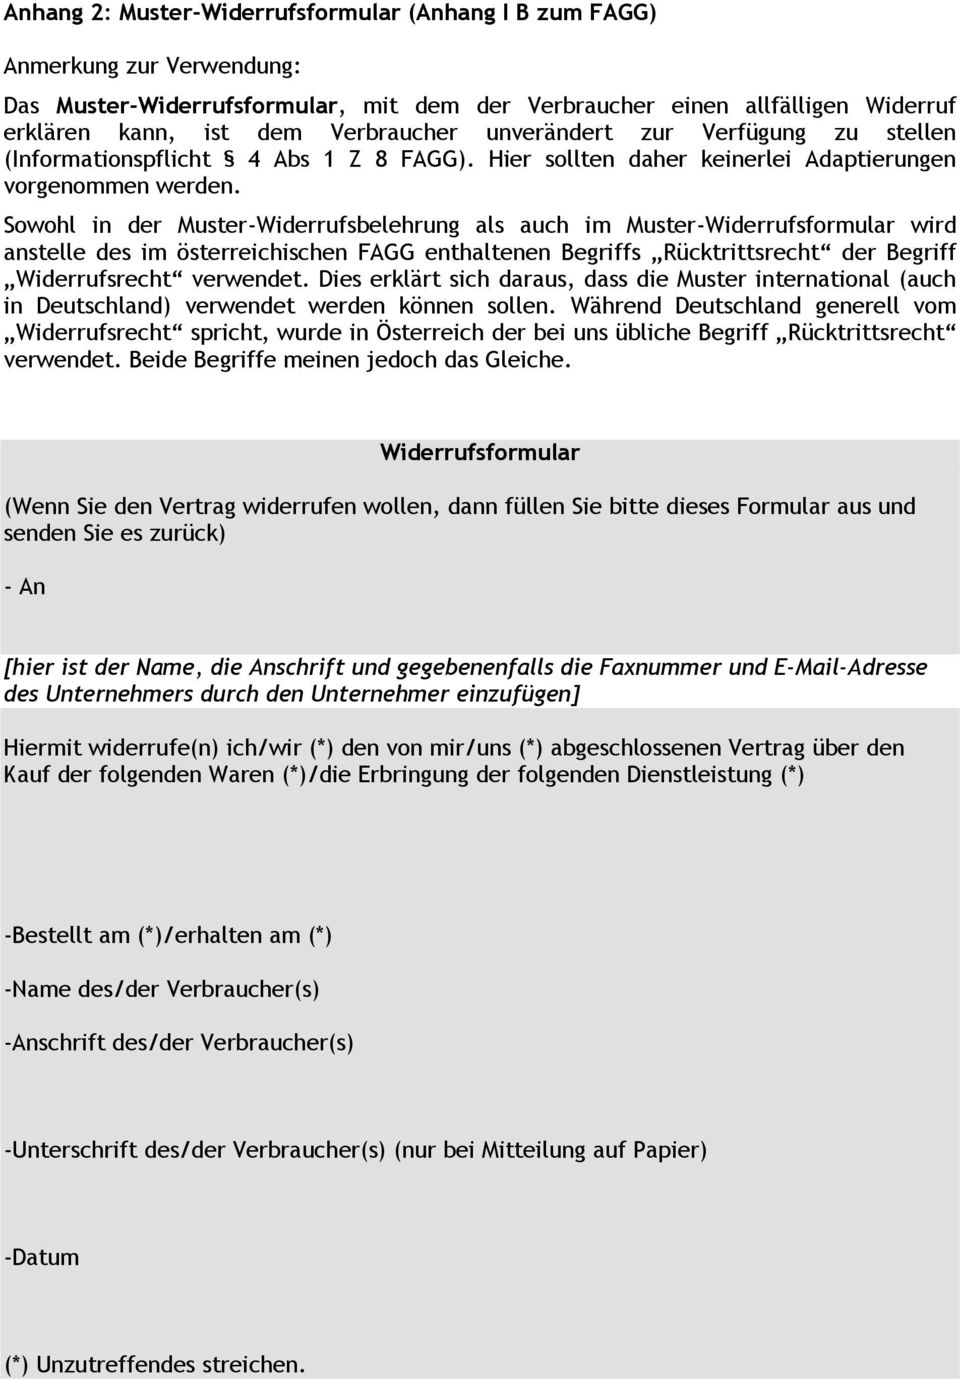 Sowohl in der Muster-Widerrufsbelehrung als auch im Muster-Widerrufsformular wird anstelle des im österreichischen FAGG enthaltenen Begriffs Rücktrittsrecht der Begriff Widerrufsrecht verwendet.